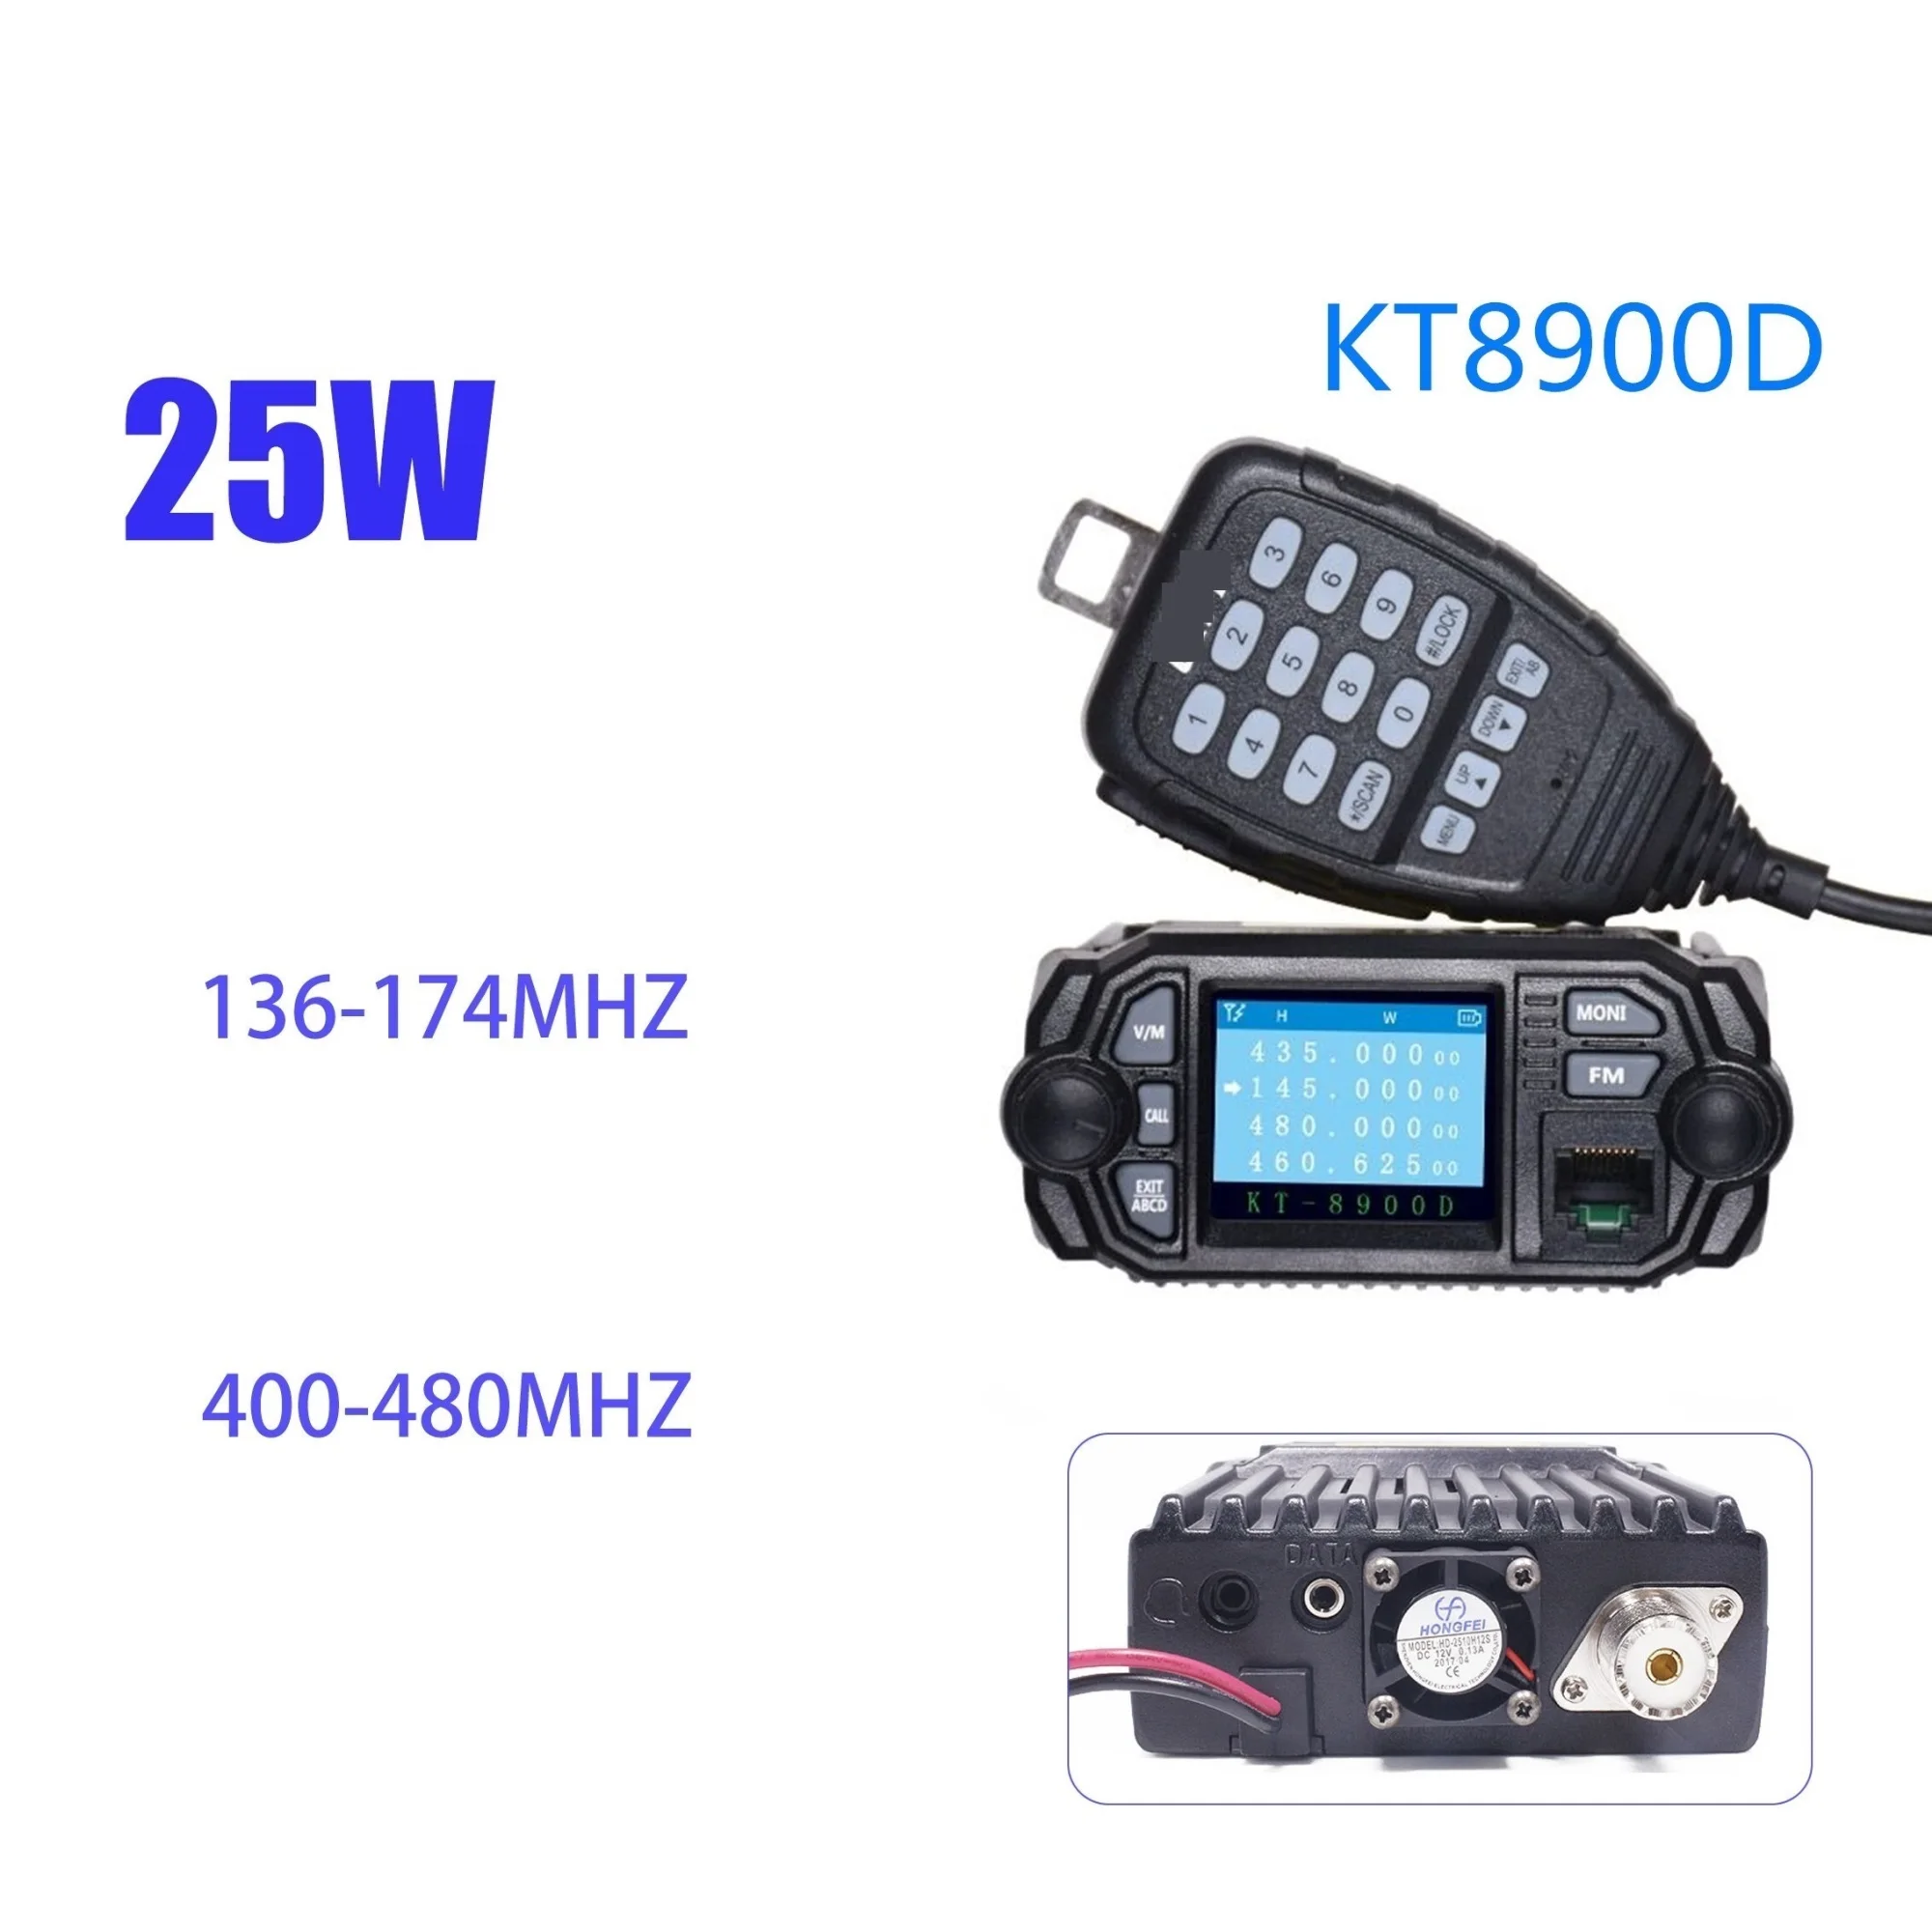 

VHF UHF 136-174 мобильный радиоприемник двухдиапазонный автомобильный FM-приемопередатчик 25 Вт рация связь расстояние Любительская антенна CB